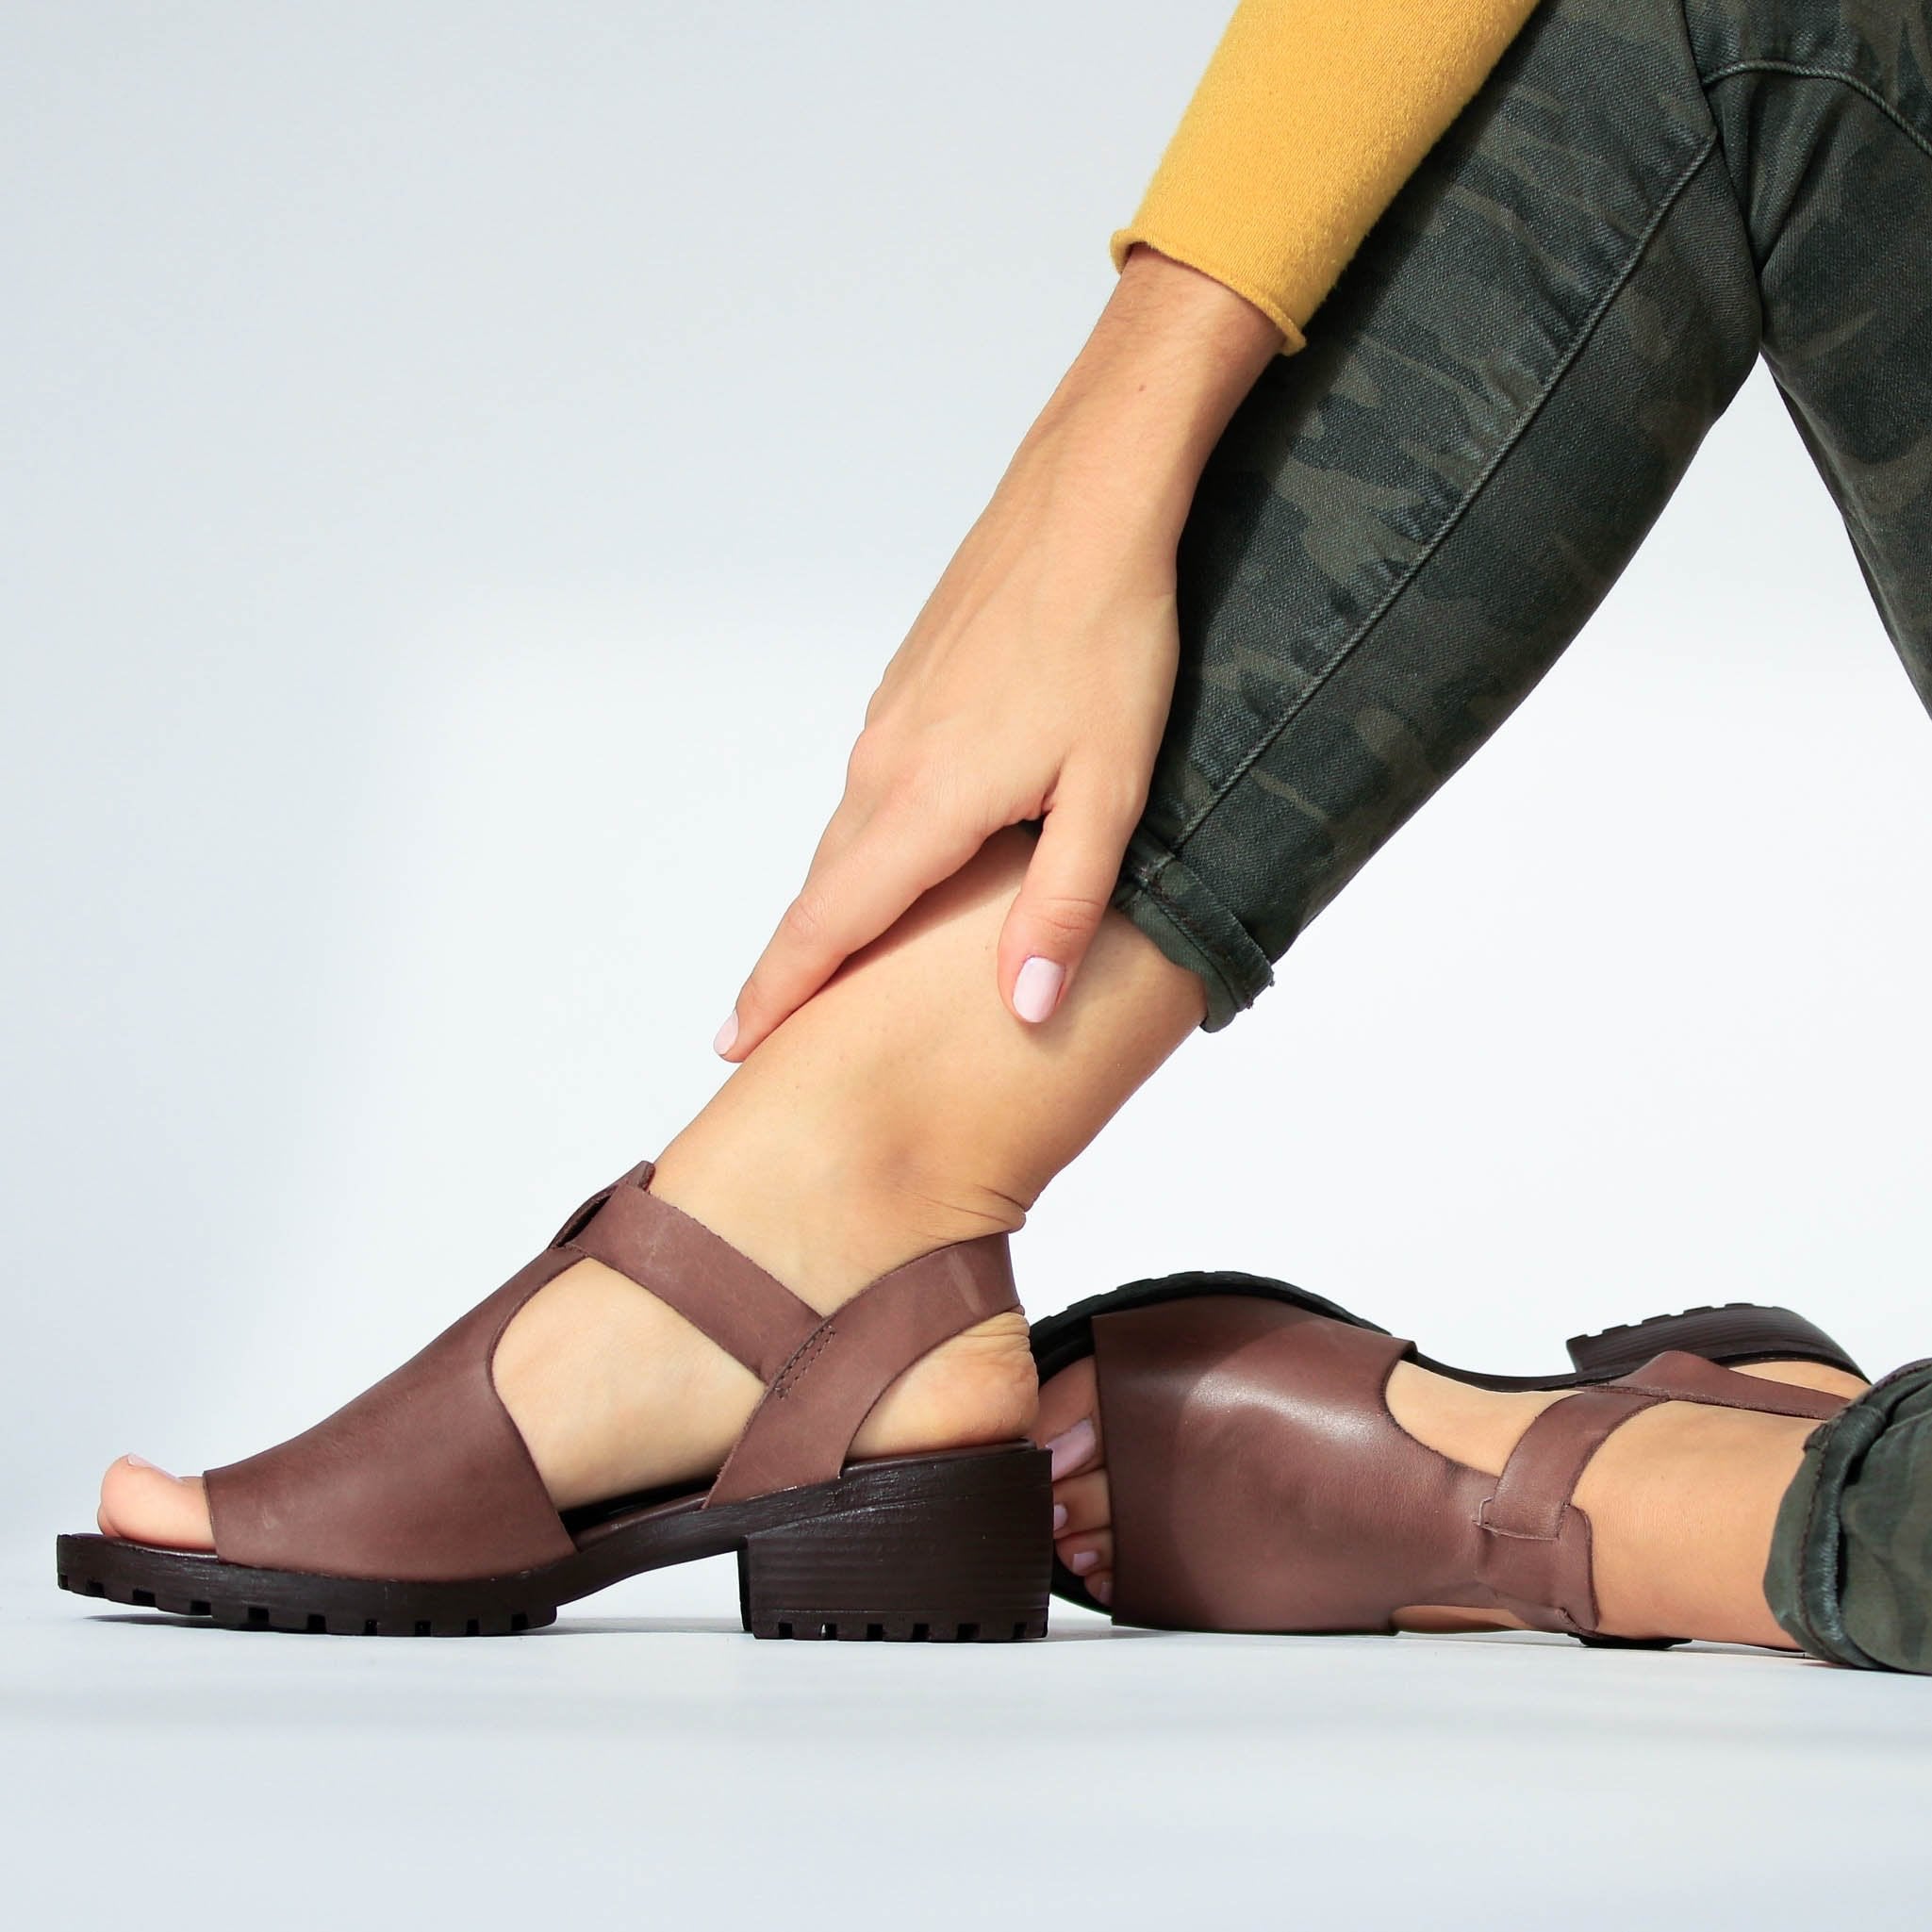 leather footwear for women